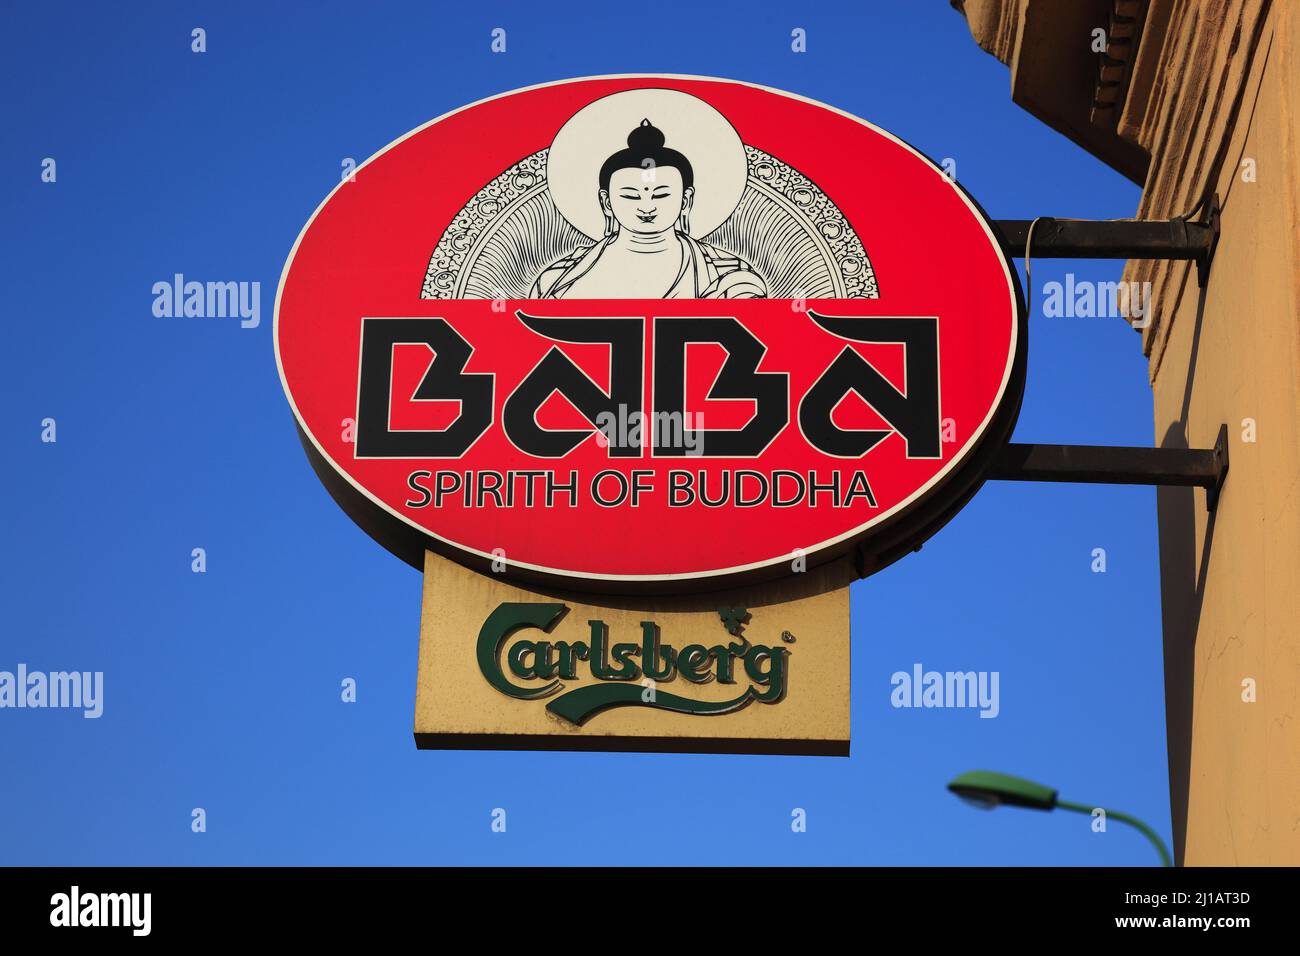 Werbeschild für ein esoterisch buddhistisches Geschäft, Lokal, in Verbindung mit Bierwerbung für Carlsberg, Brasov, Kronstadt, Siebenbürgen, Rumänien Banque D'Images